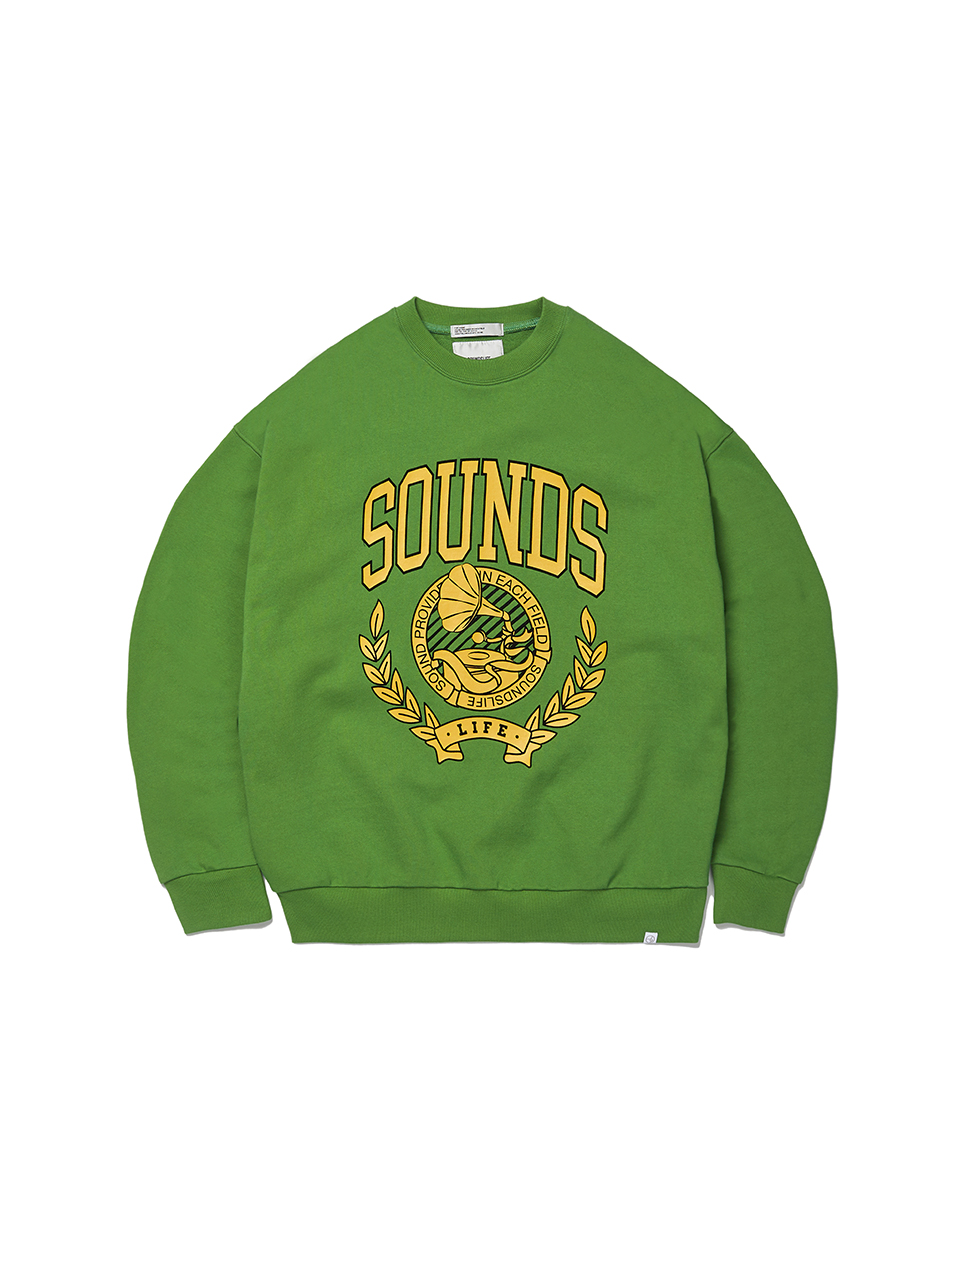 SOUNDSLIFE - Flocking Printing Sweatshirts Green